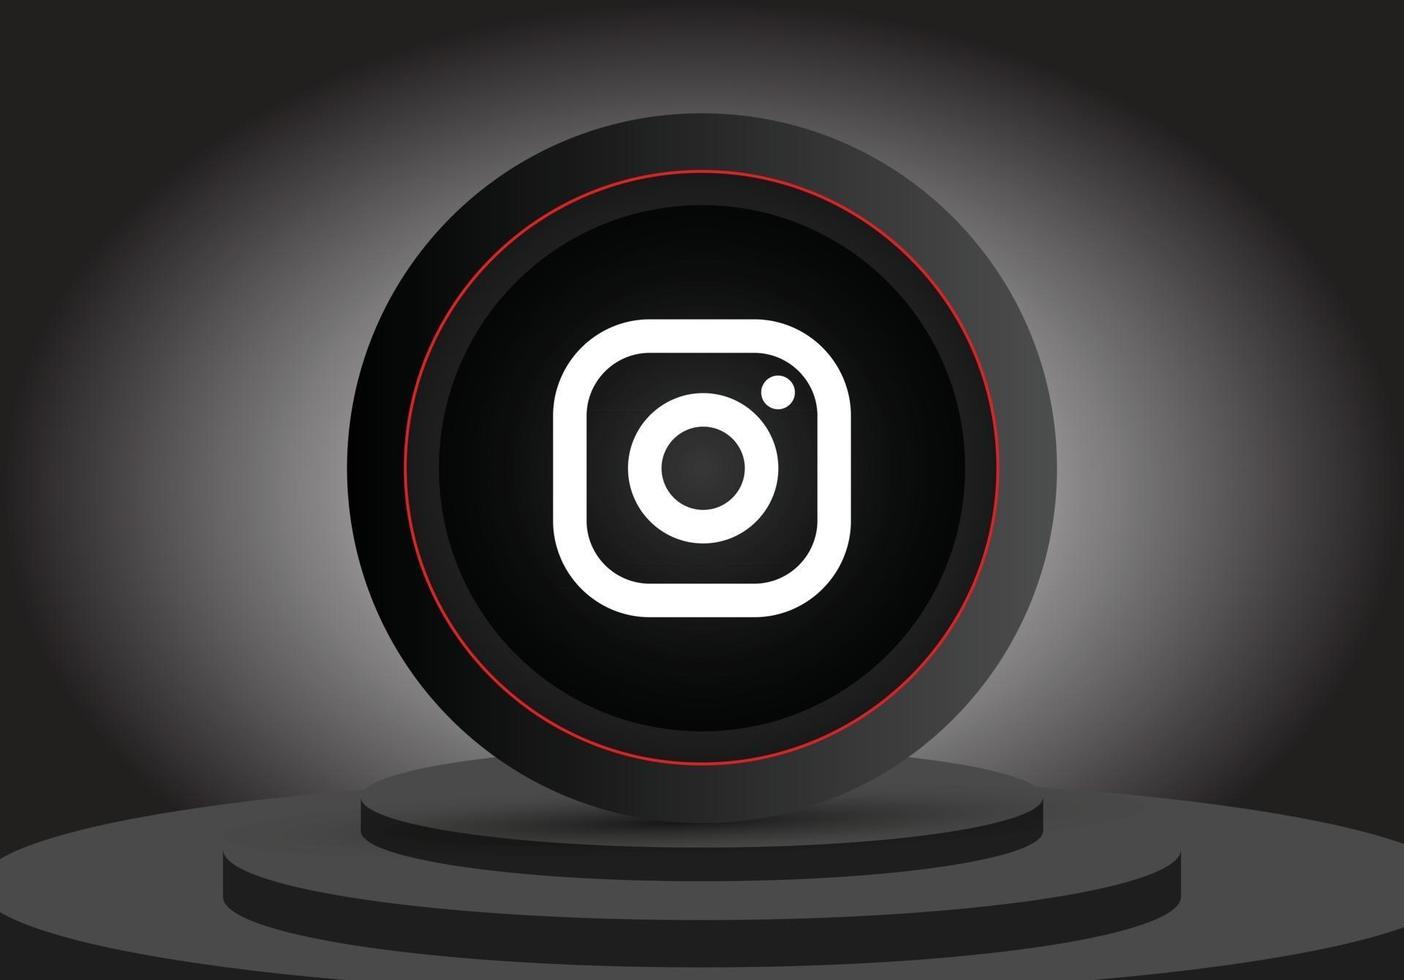 ícone do instagram 3D da mídia social vetor